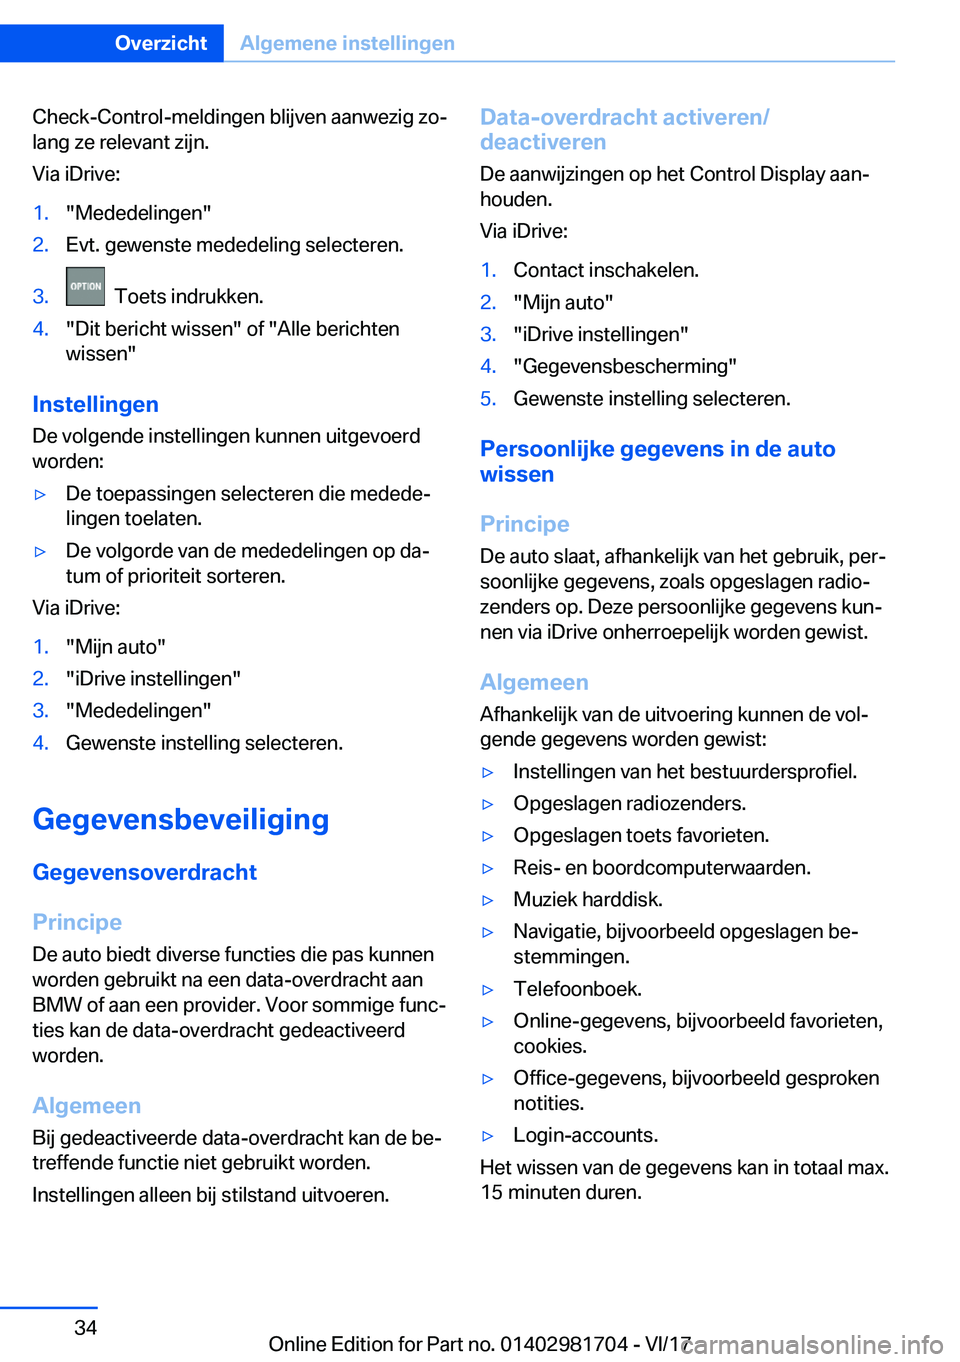 BMW M4 2018  Instructieboekjes (in Dutch) �C�h�e�c�k�-�C�o�n�t�r�o�l�-�m�e�l�d�i�n�g�e�n� �b�l�i�j�v�e�n� �a�a�n�w�e�z�i�g� �z�oj�l�a�n�g� �z�e� �r�e�l�e�v�a�n�t� �z�i�j�n�.
�V�i�a� �i�D�r�i�v�e�:�1�.�"�M�e�d�e�d�e�l�i�n�g�e�n�"�2�.�